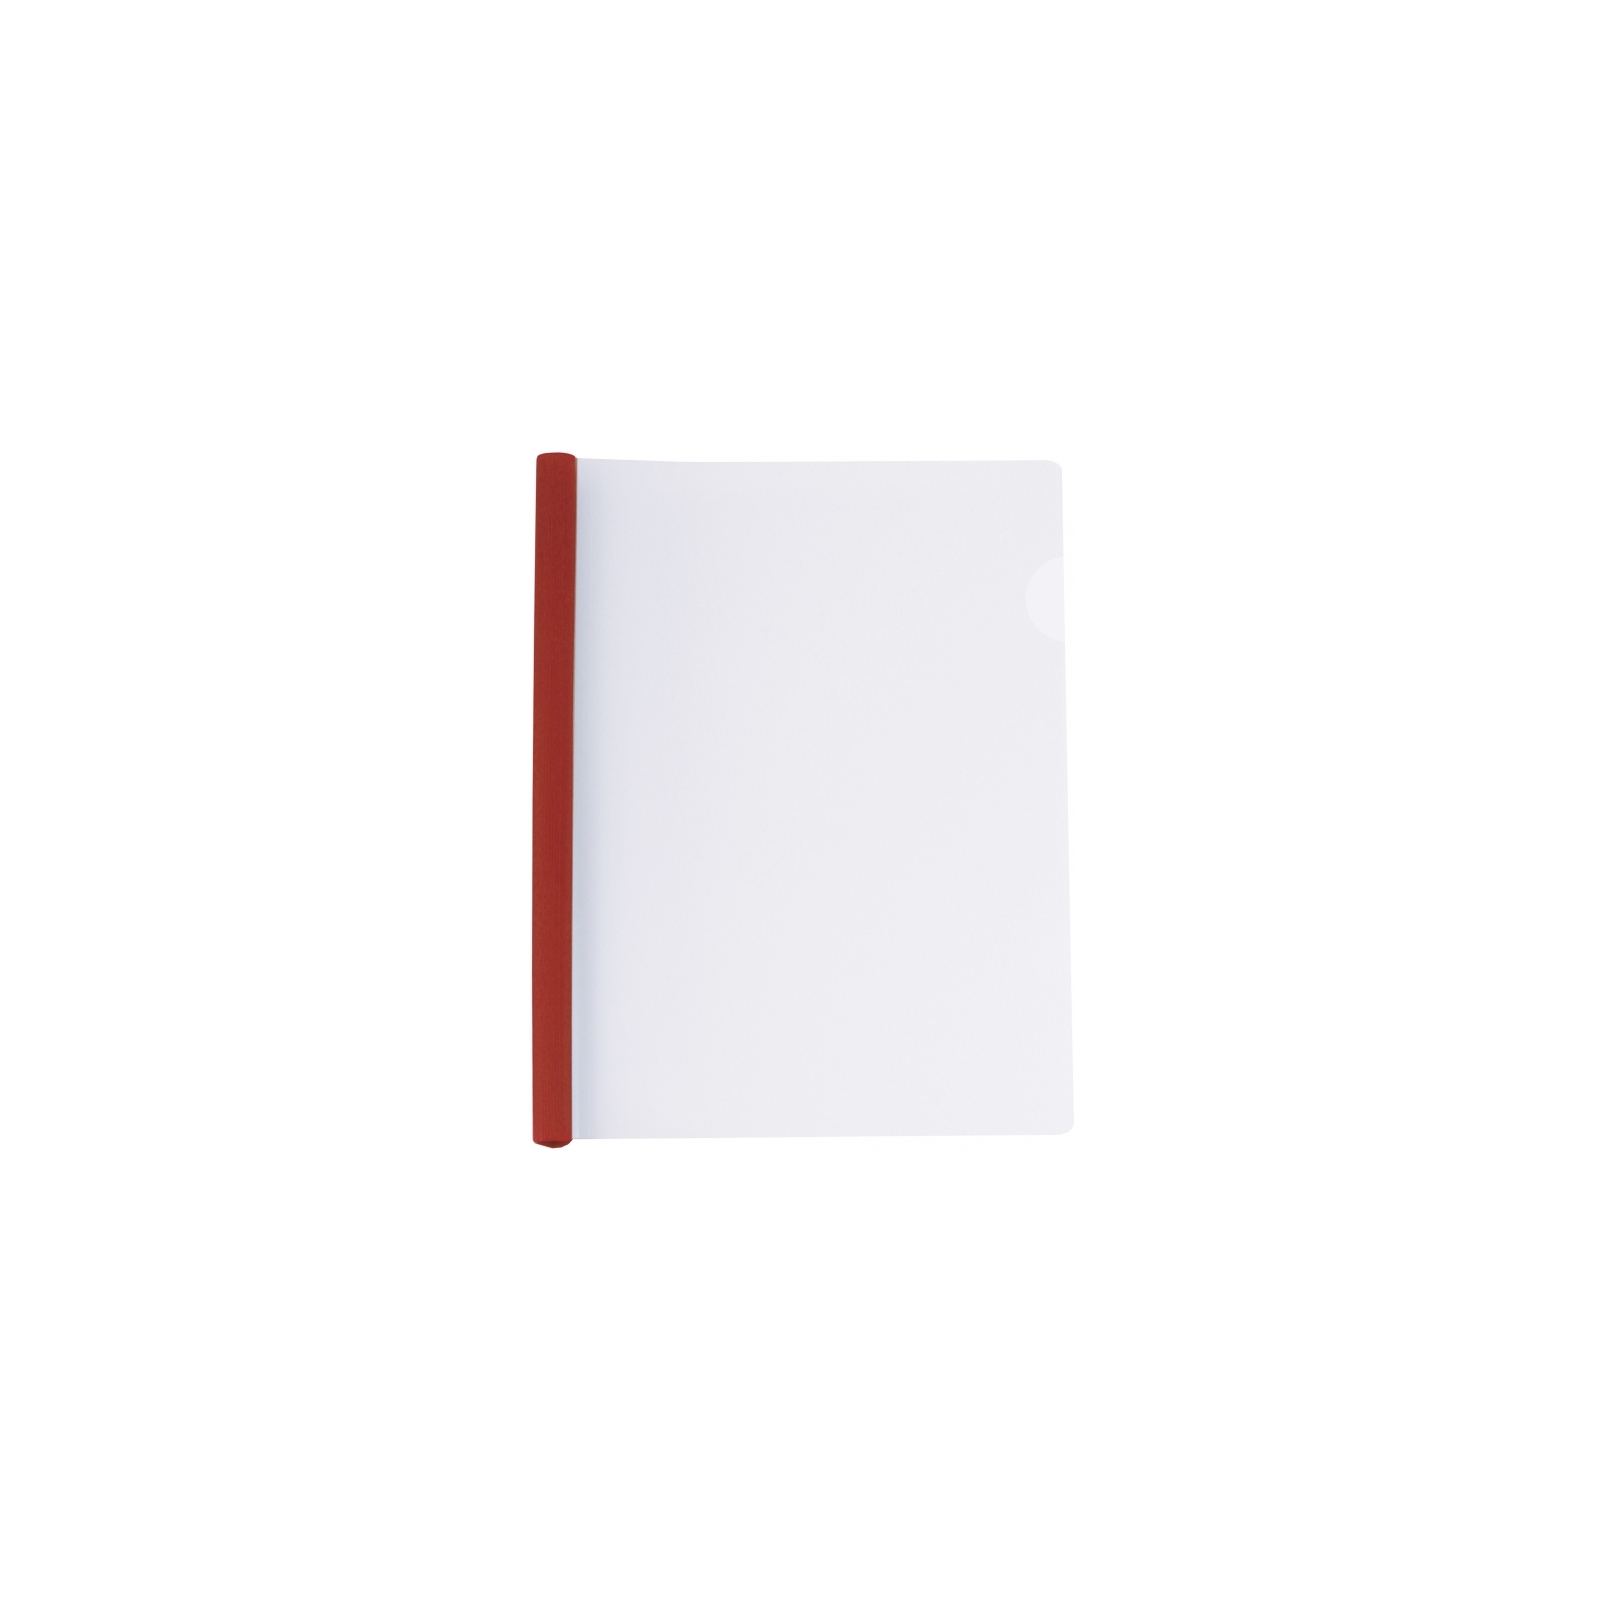 Папка-скоросшиватель Economix А4 с планкой-зажимом 6 мм (2-35 листов), красная (E31204-03)